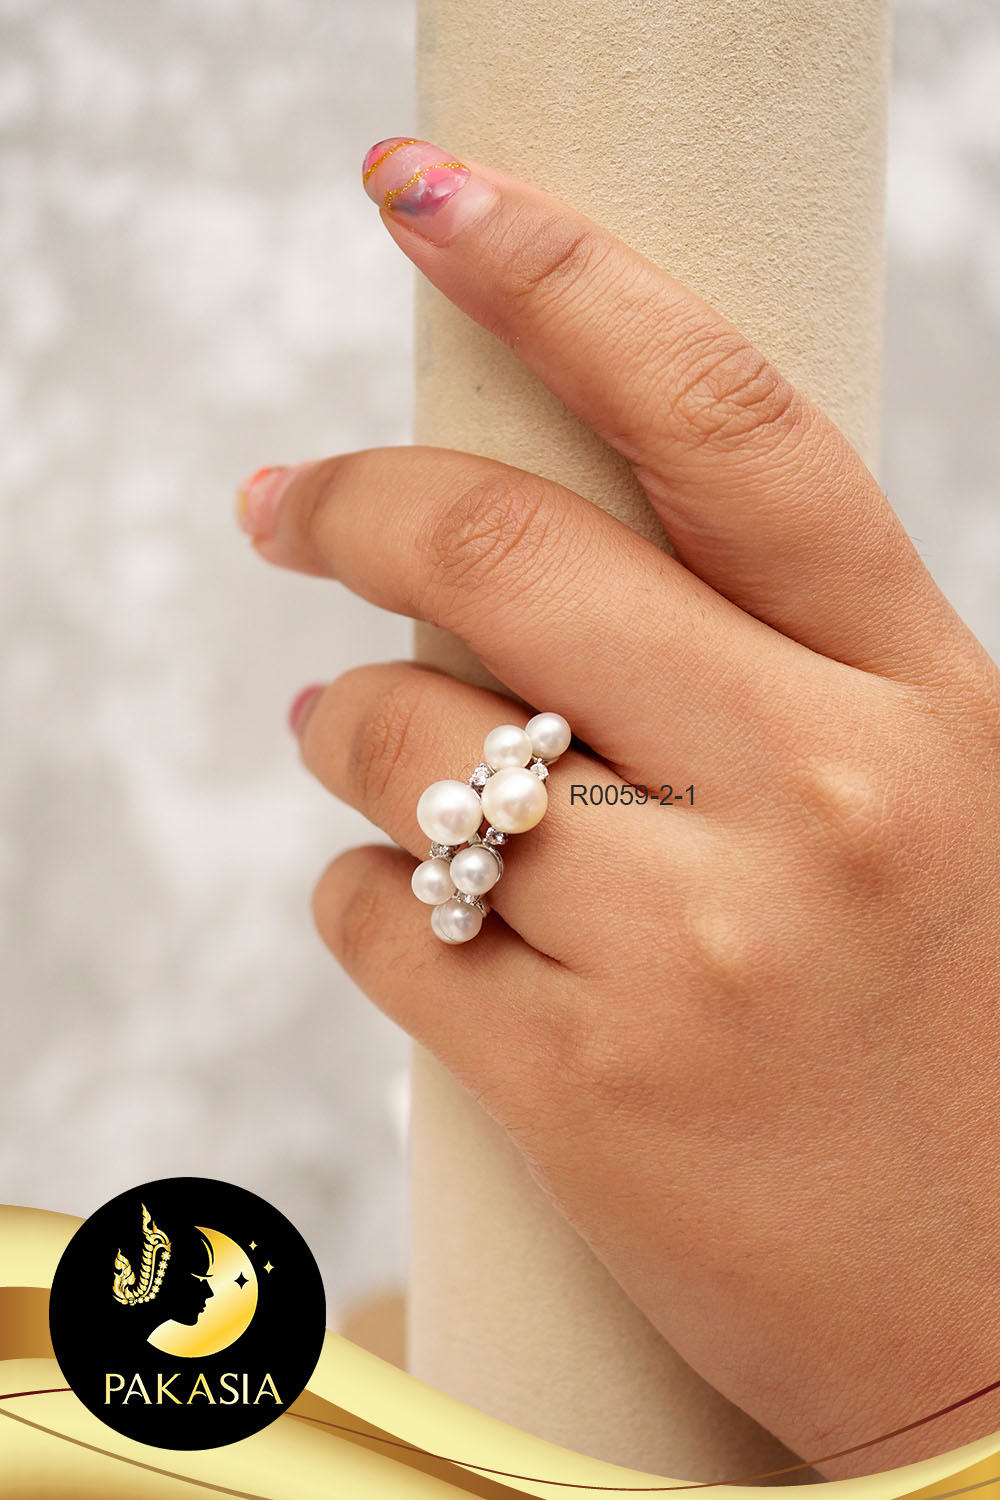 แหวนมุกพวงองุ่น มุกสีขาว ทรงSemi-round ขนาด 4.5 -6.5 mm เกรด AAA ตัวเรือนเงินแท้ 92.5 ชุบทองคำขาว ประดับพลอยแท้ White Topaz / R734